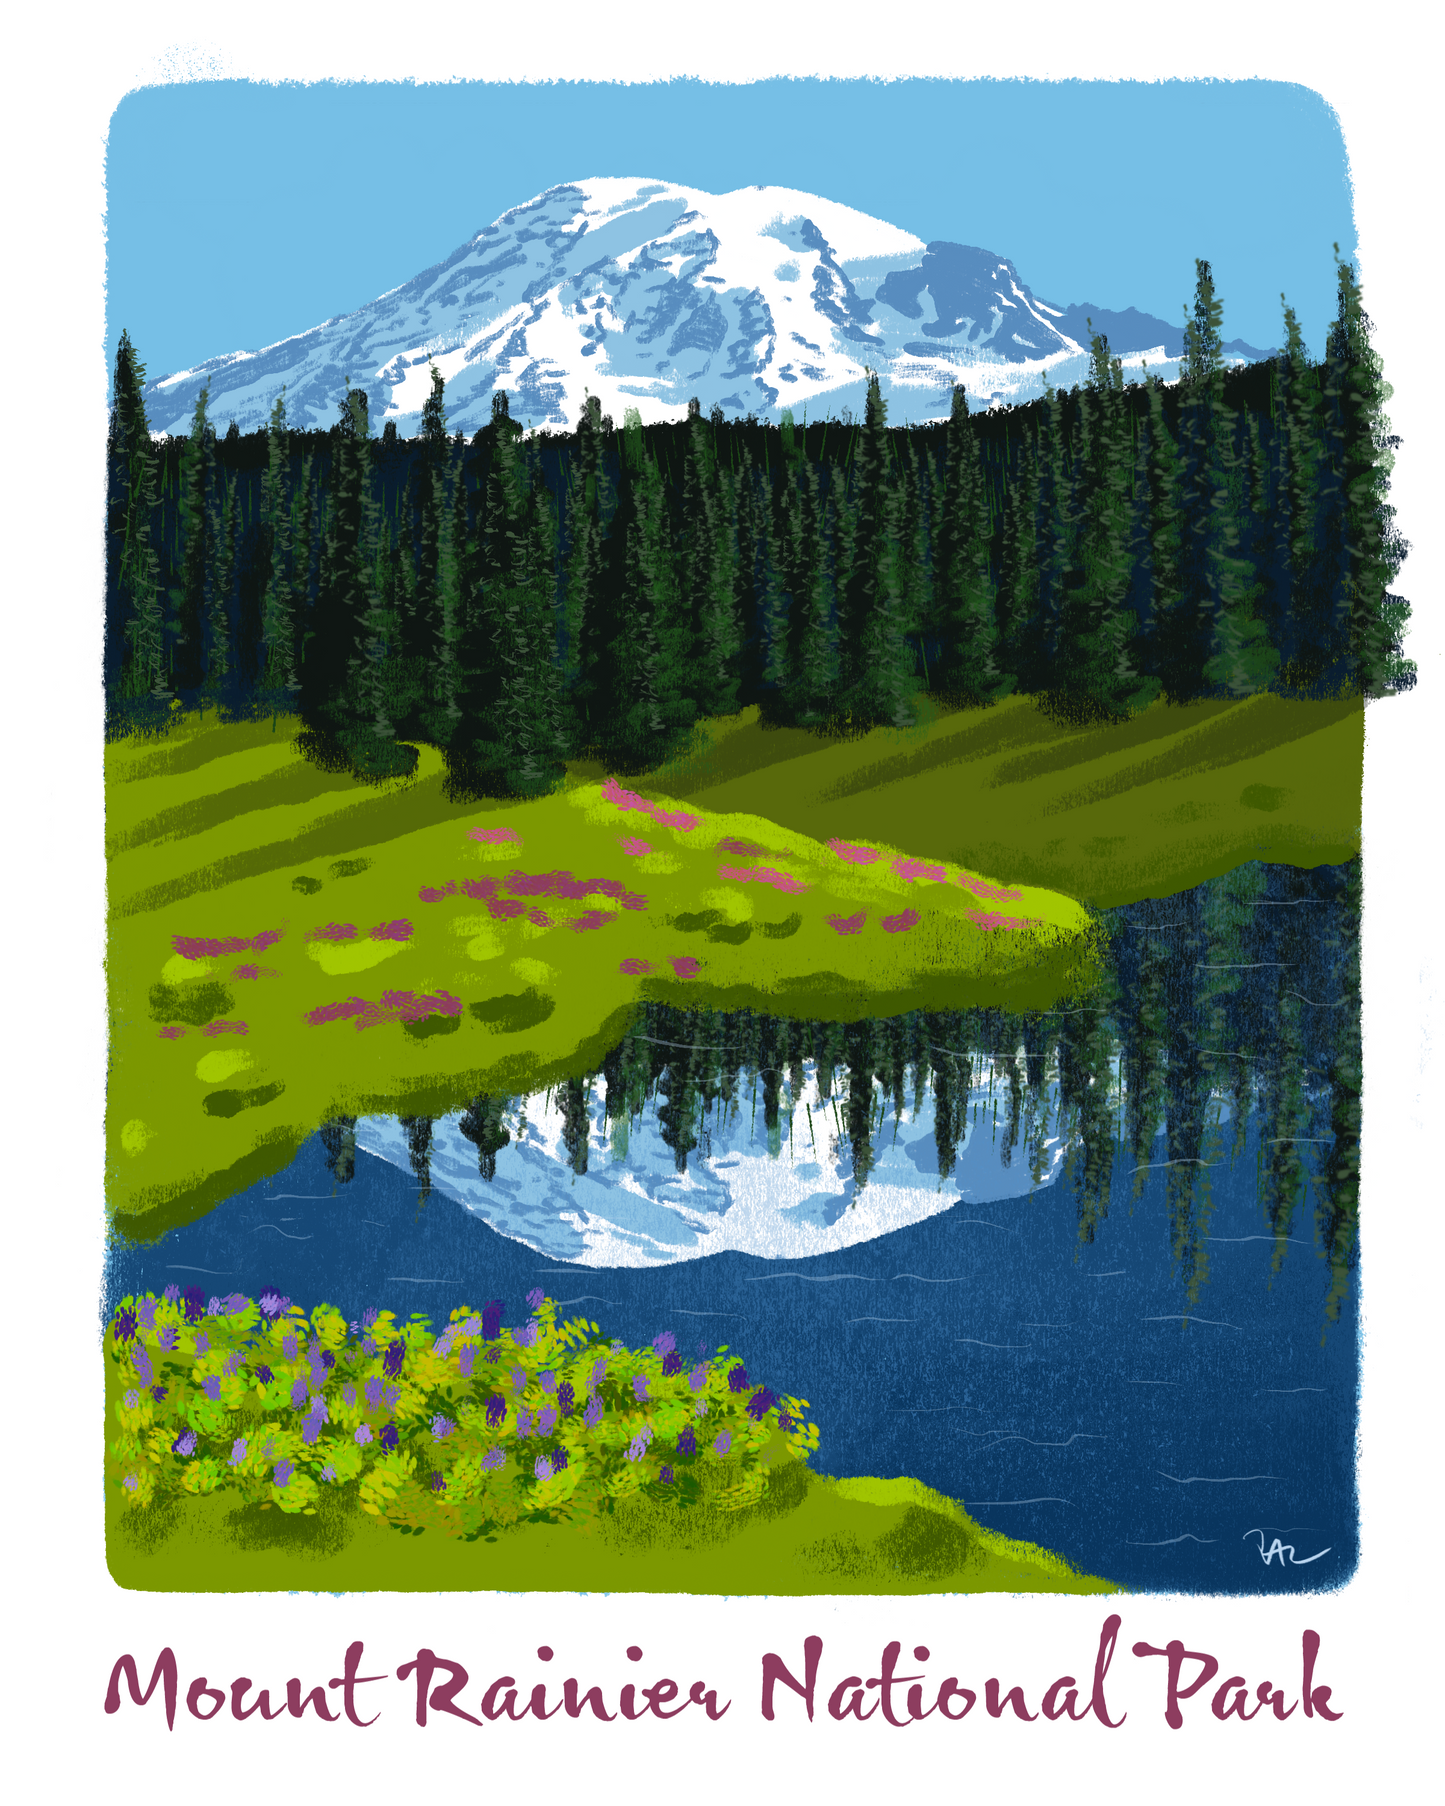 Mount Rainier Postcard